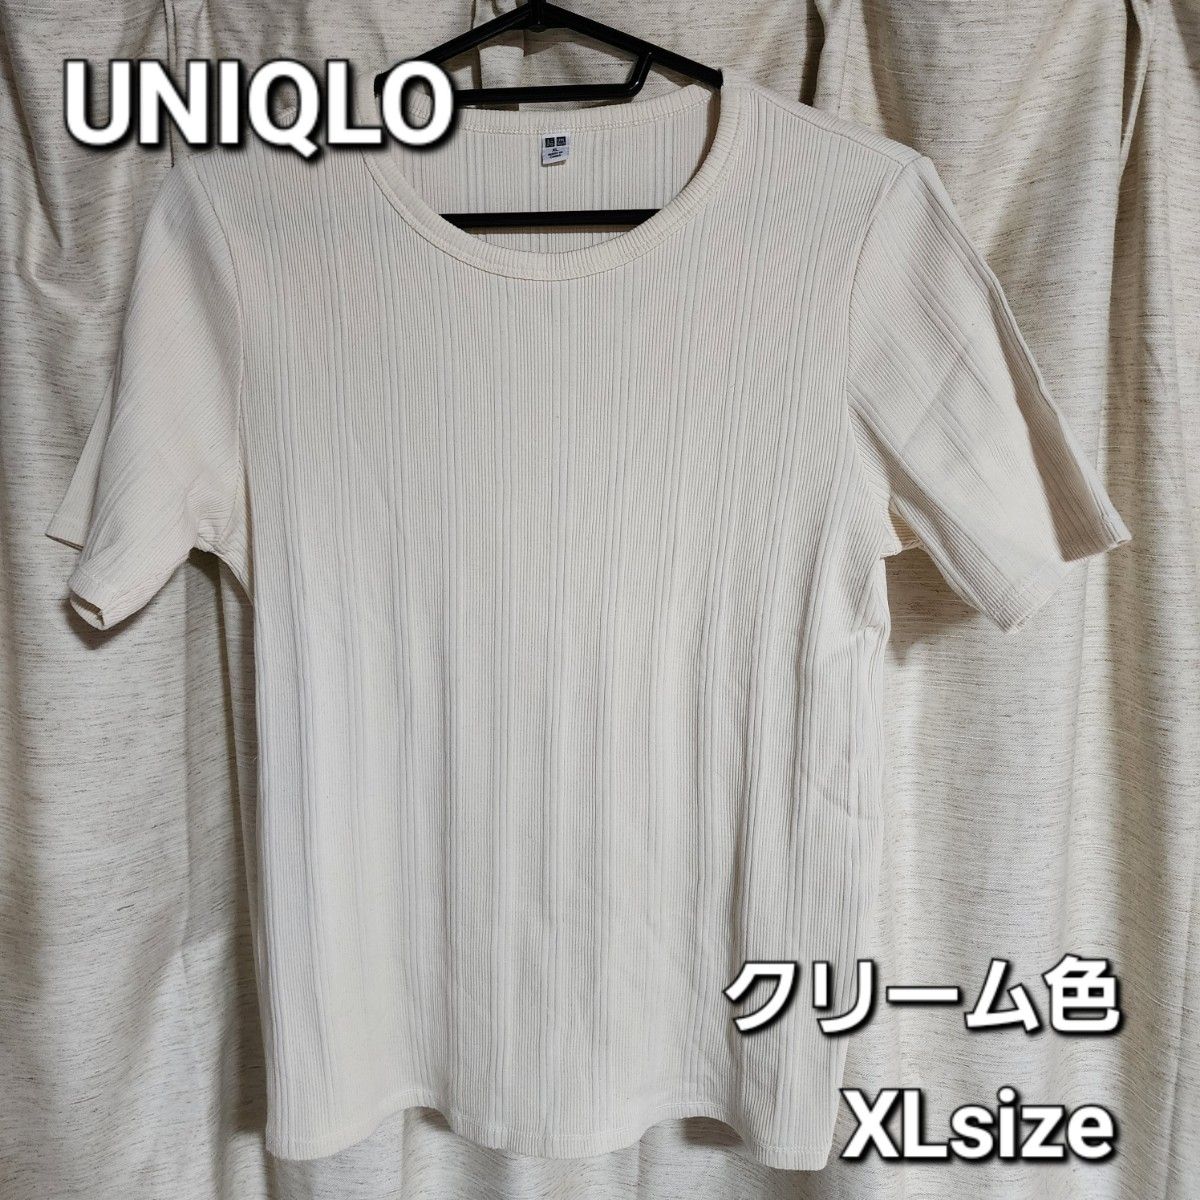 UNIQLO リブ 半袖Tシャツ クリーム色 XLsize